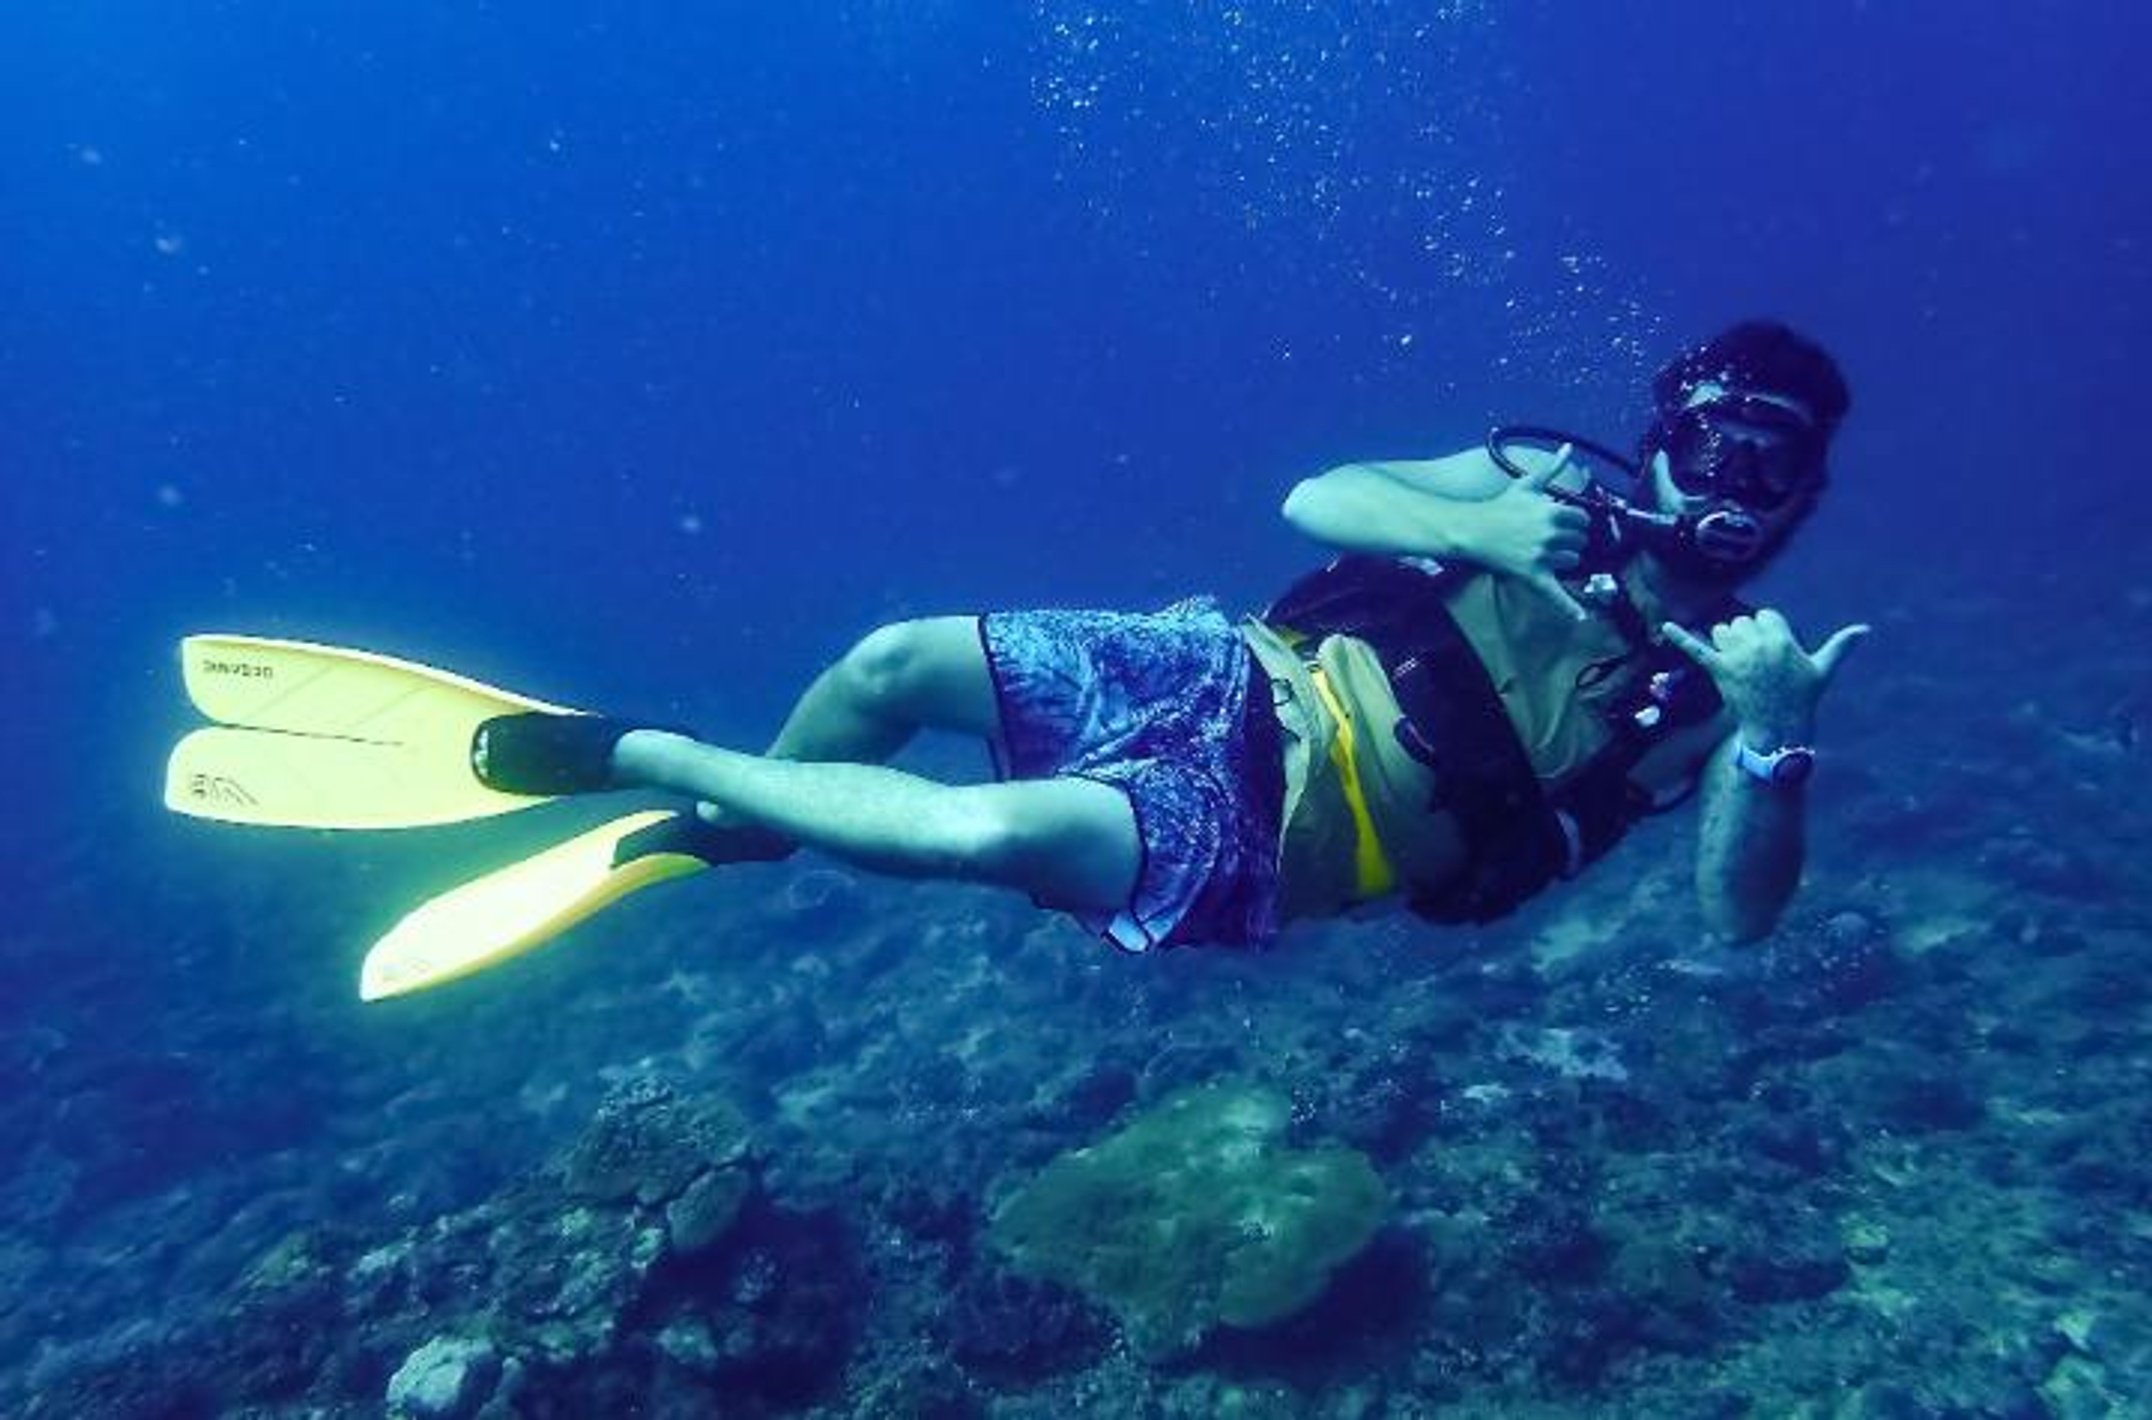 man diving underwater in scuba gear